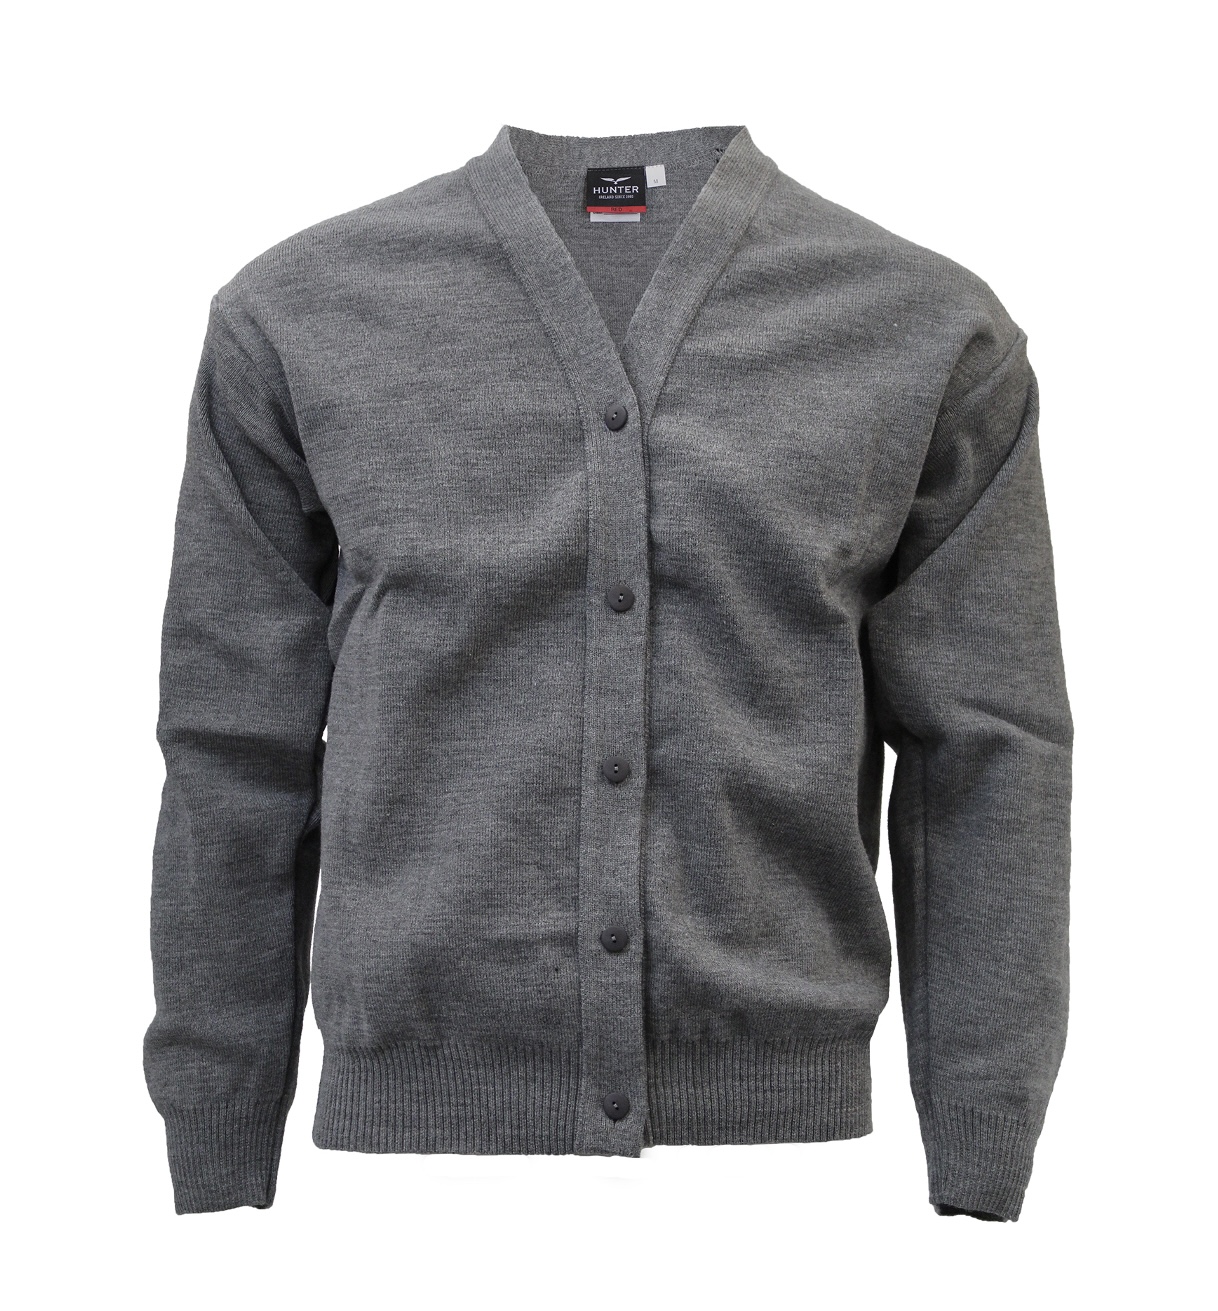 Grey Cardigan - Quality Schoolwear